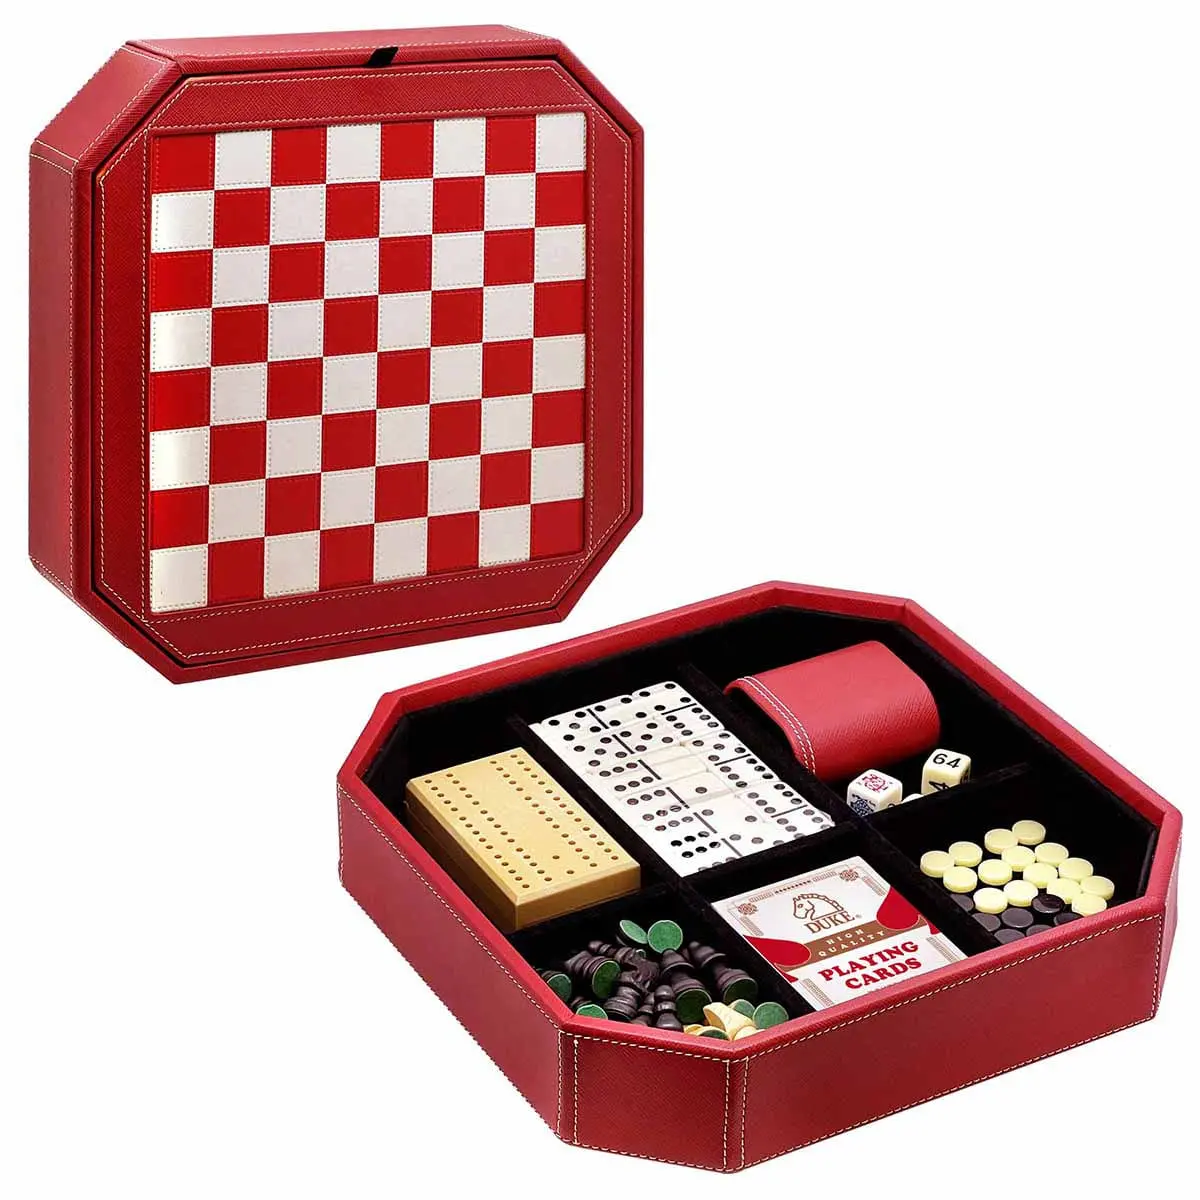 Colección de juegos de mesa retro rojo clásico